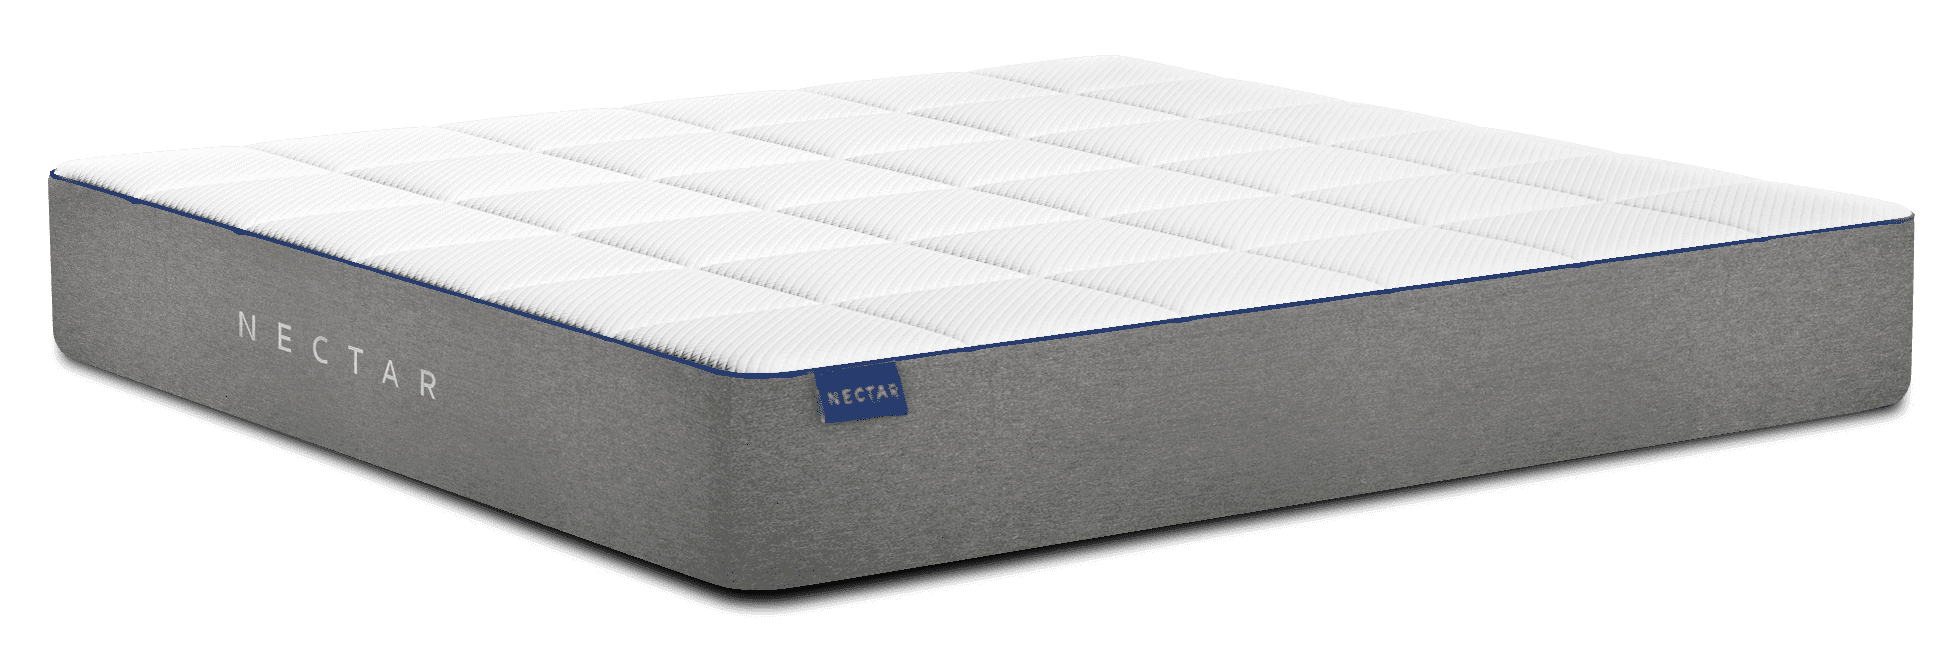 best memory foam mattress for cloud like sleeping